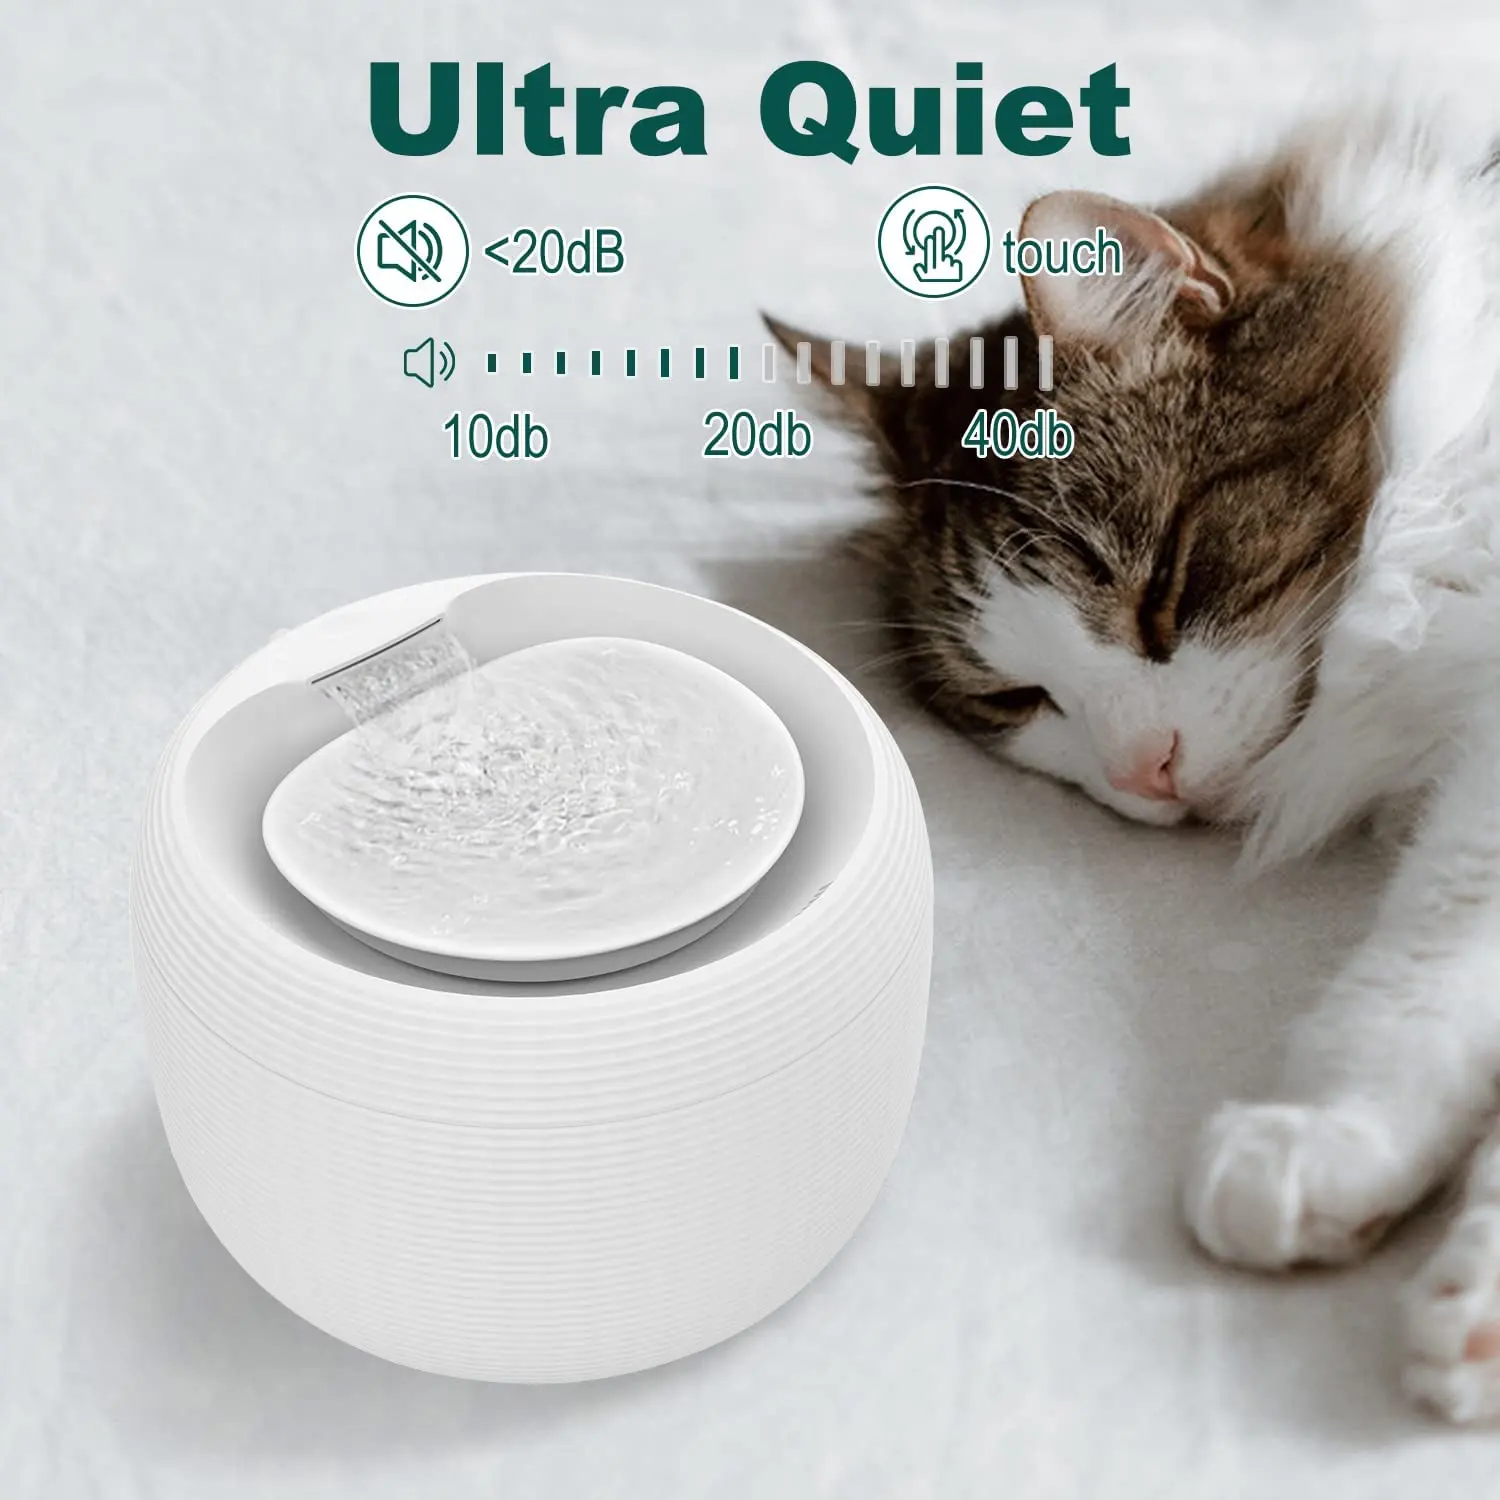 84 עוז/2.5L אולטרה שקט מזרקת מים לחיות מחמד, אוטומטי מתקן מים עם חכם משאבת חתול מזרקת מים